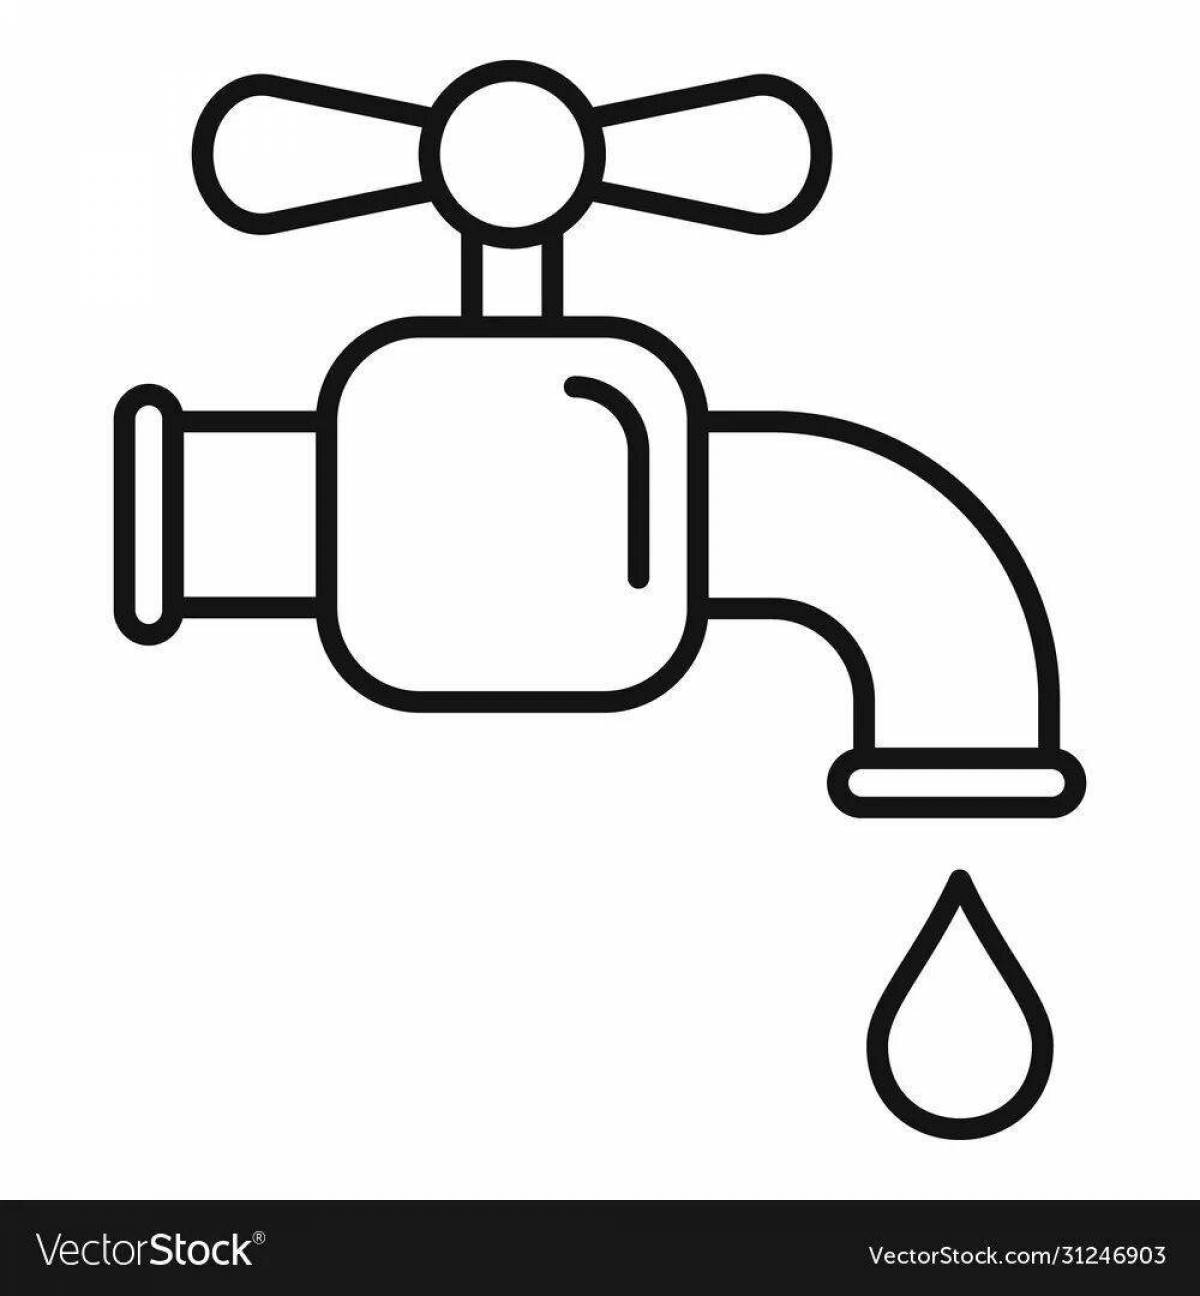 Children's water faucet #26